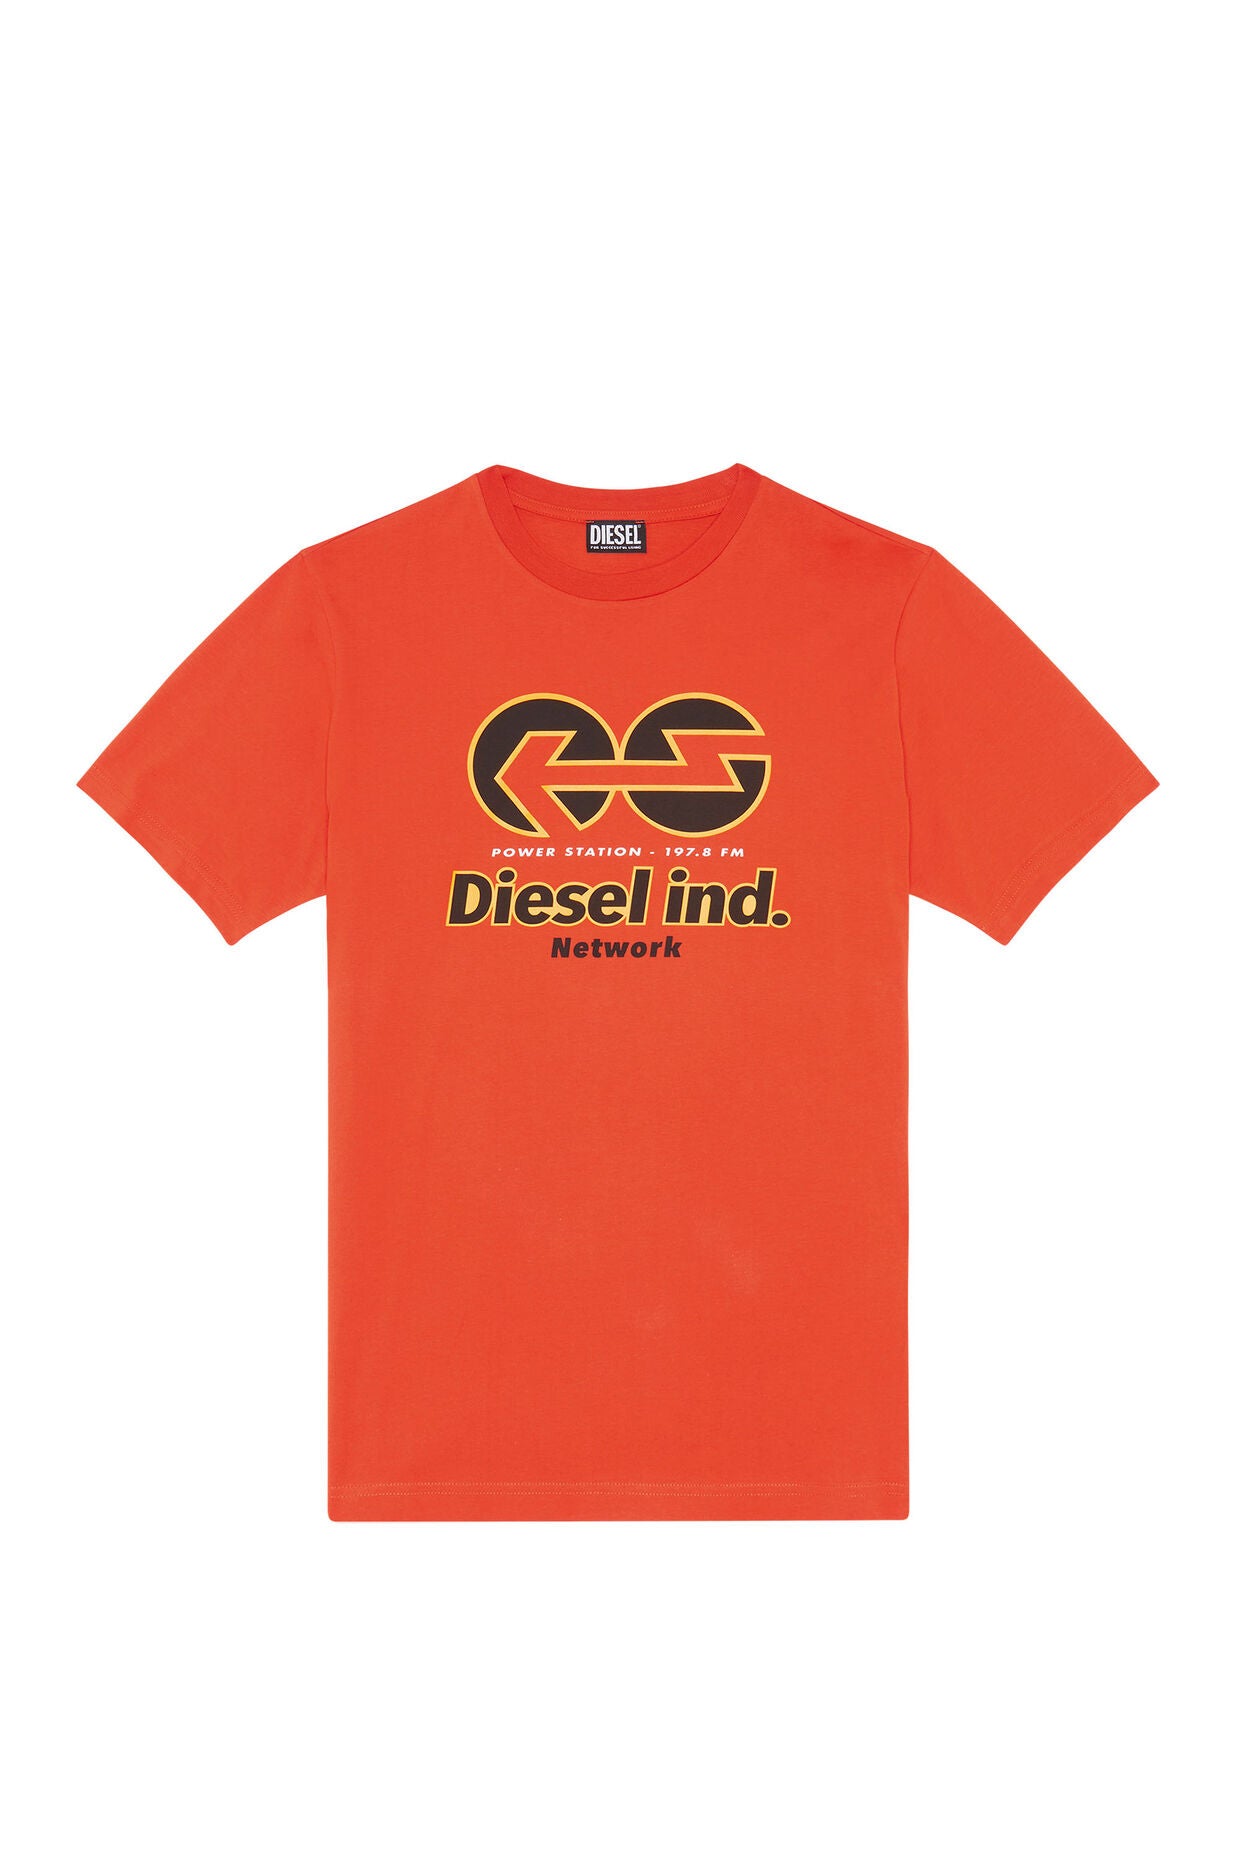 Diesel - Just Tee - Orange